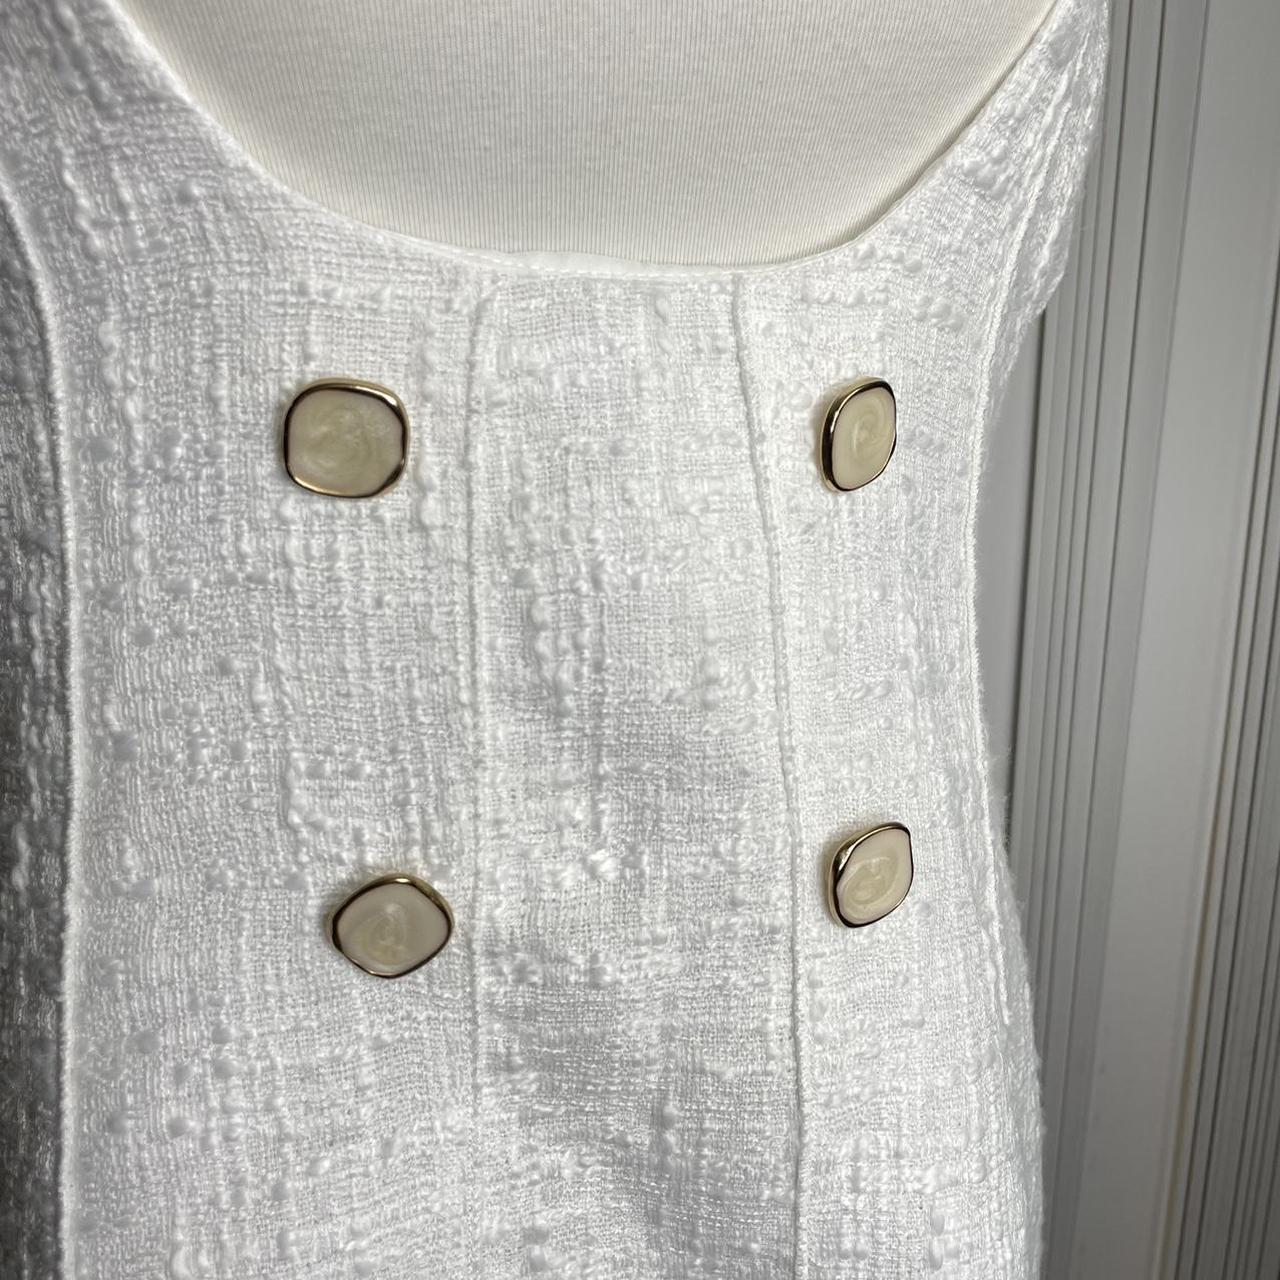 Zara, Dresses, Zara Textured Tweed Short Pinafore Dress Blue Silver  Buttons